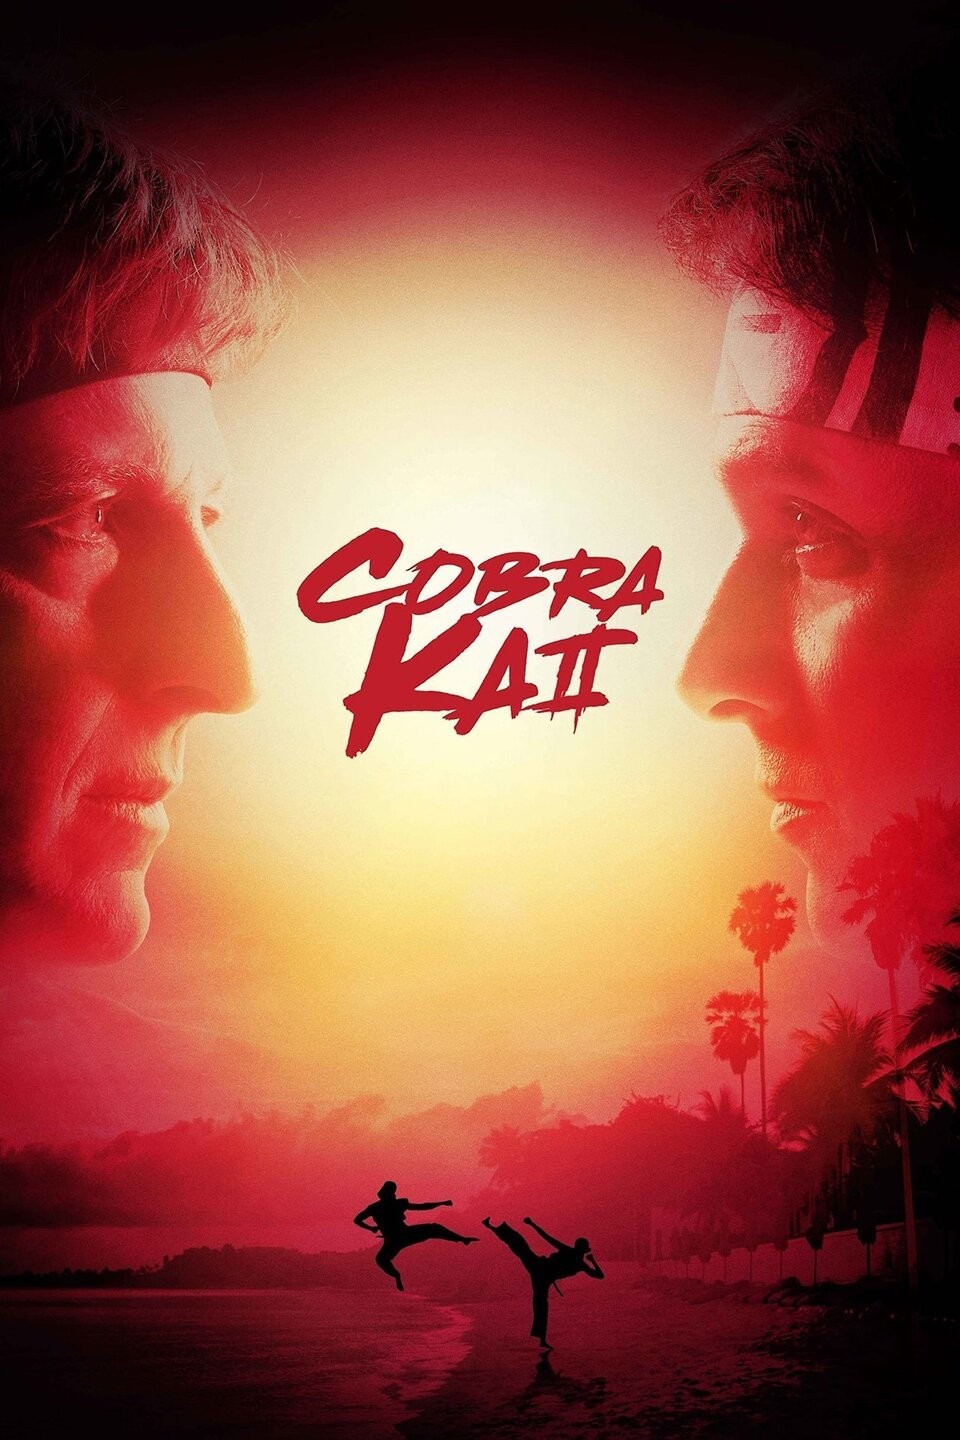 Cobra Kai  Rotten Tomatoes